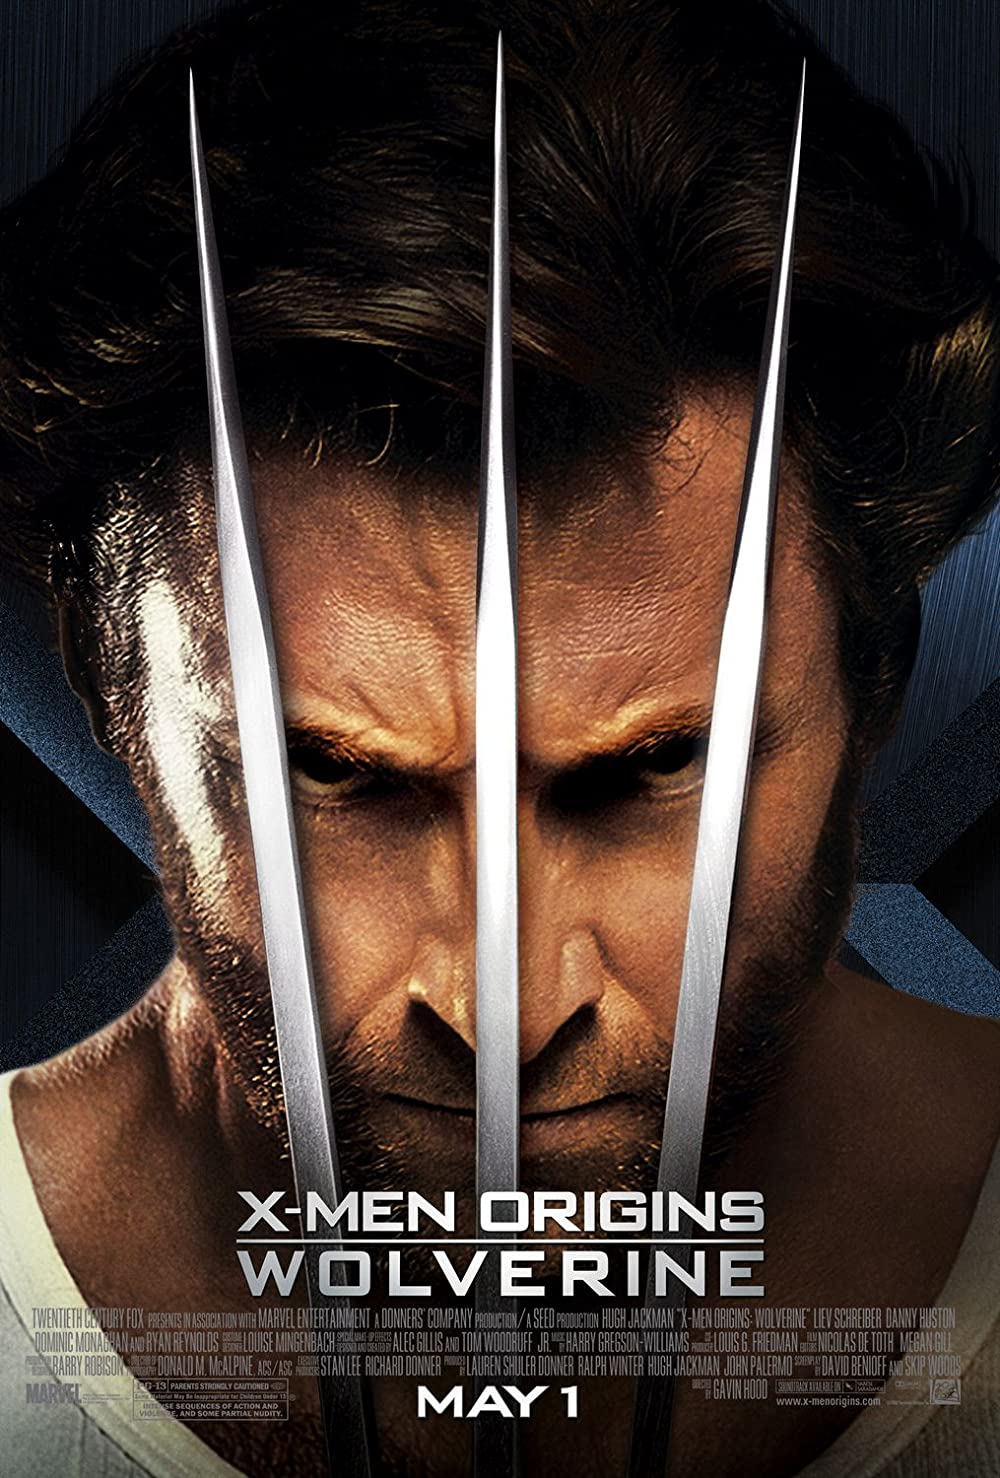 Filmbeschreibung zu X-Men Origins: Wolverine